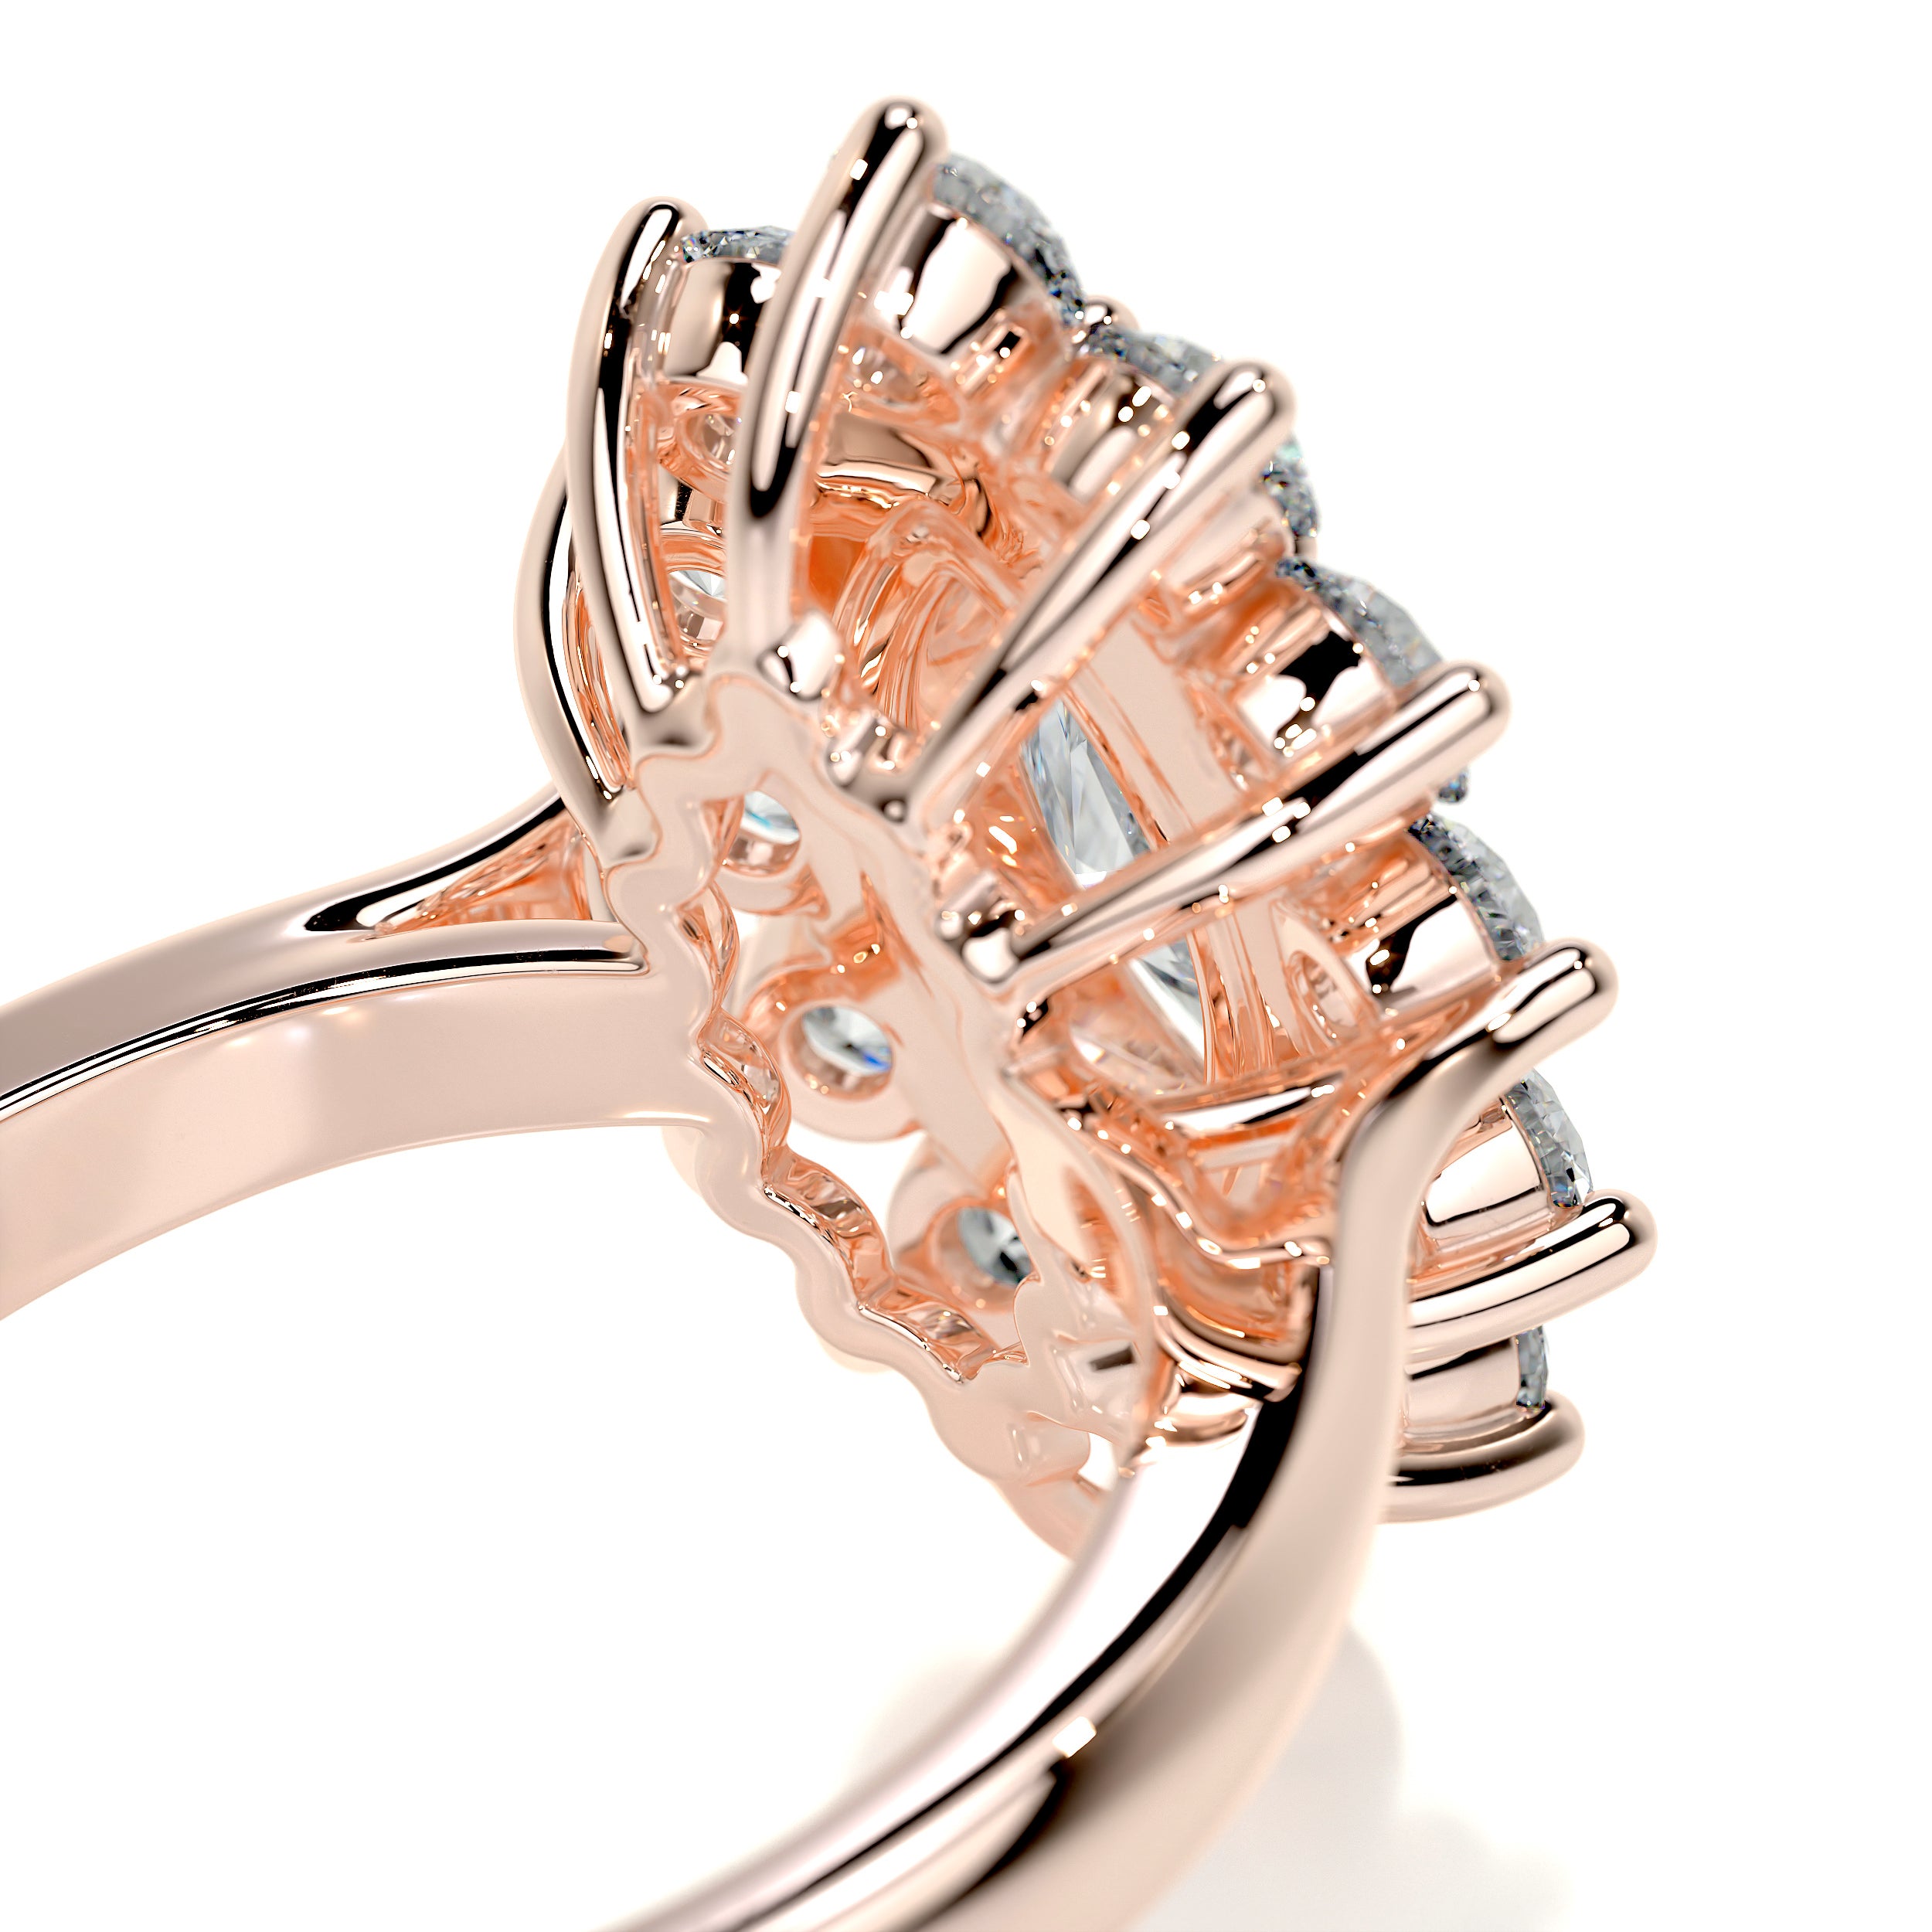 Yali Diamond Engagement Ring   (2.00 Carat) -14K Rose Gold